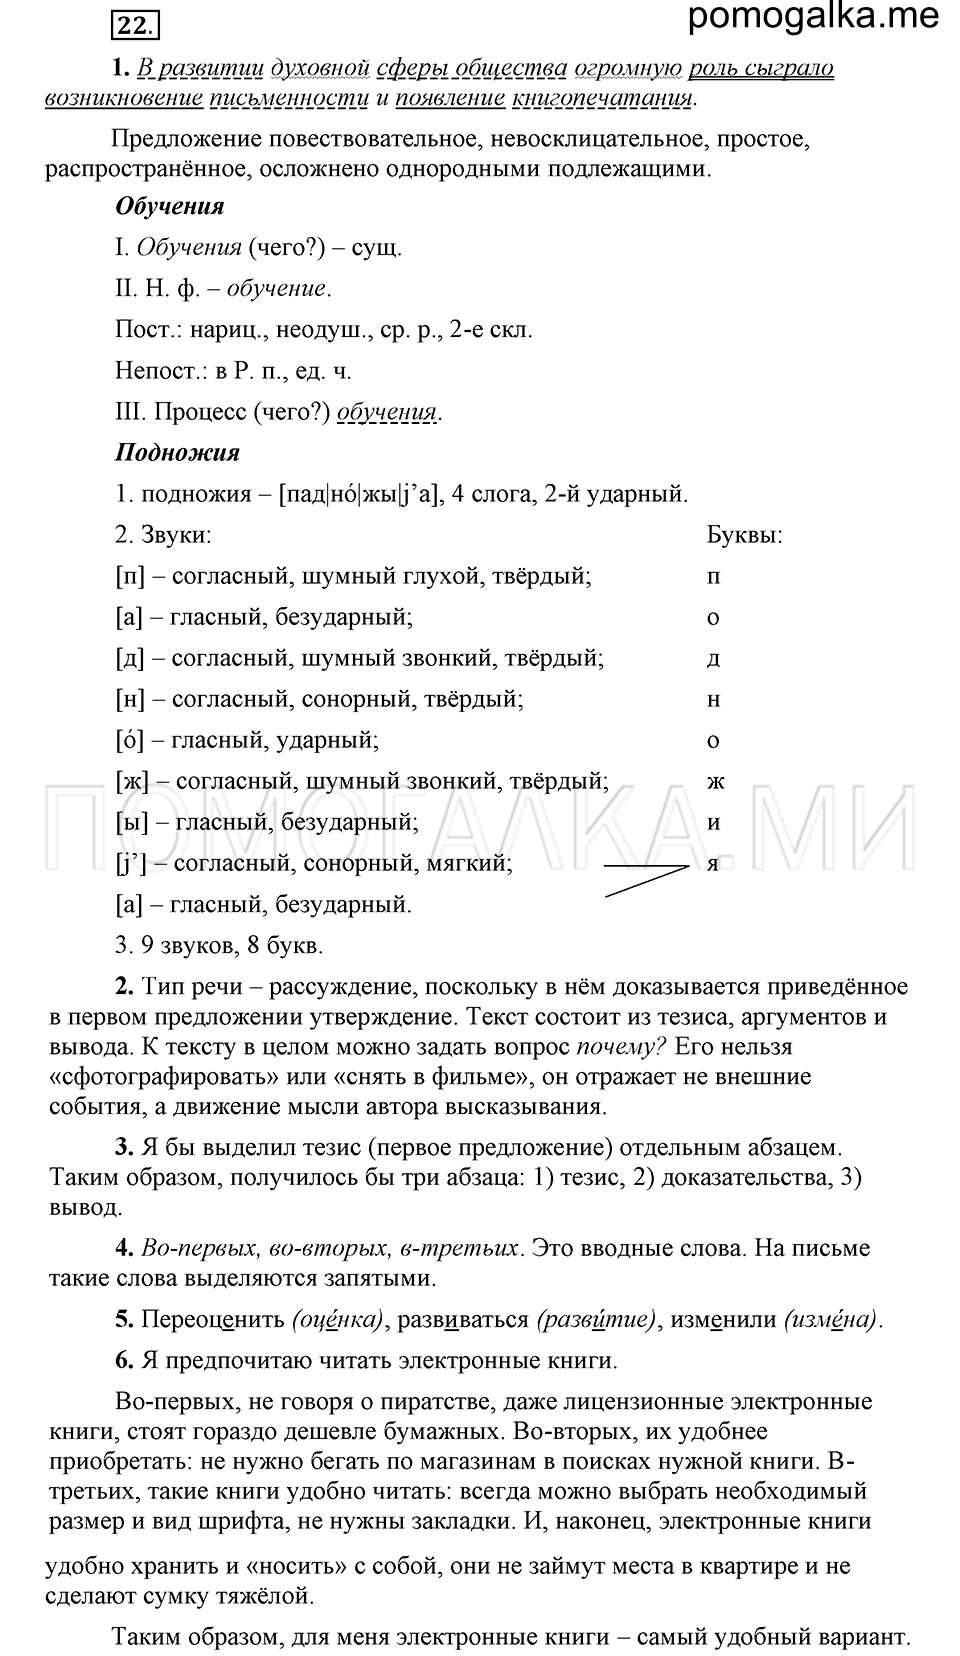 упражнение 22 русский язык 6 класс Быстрова, Кибирева 1 часть 2019 год